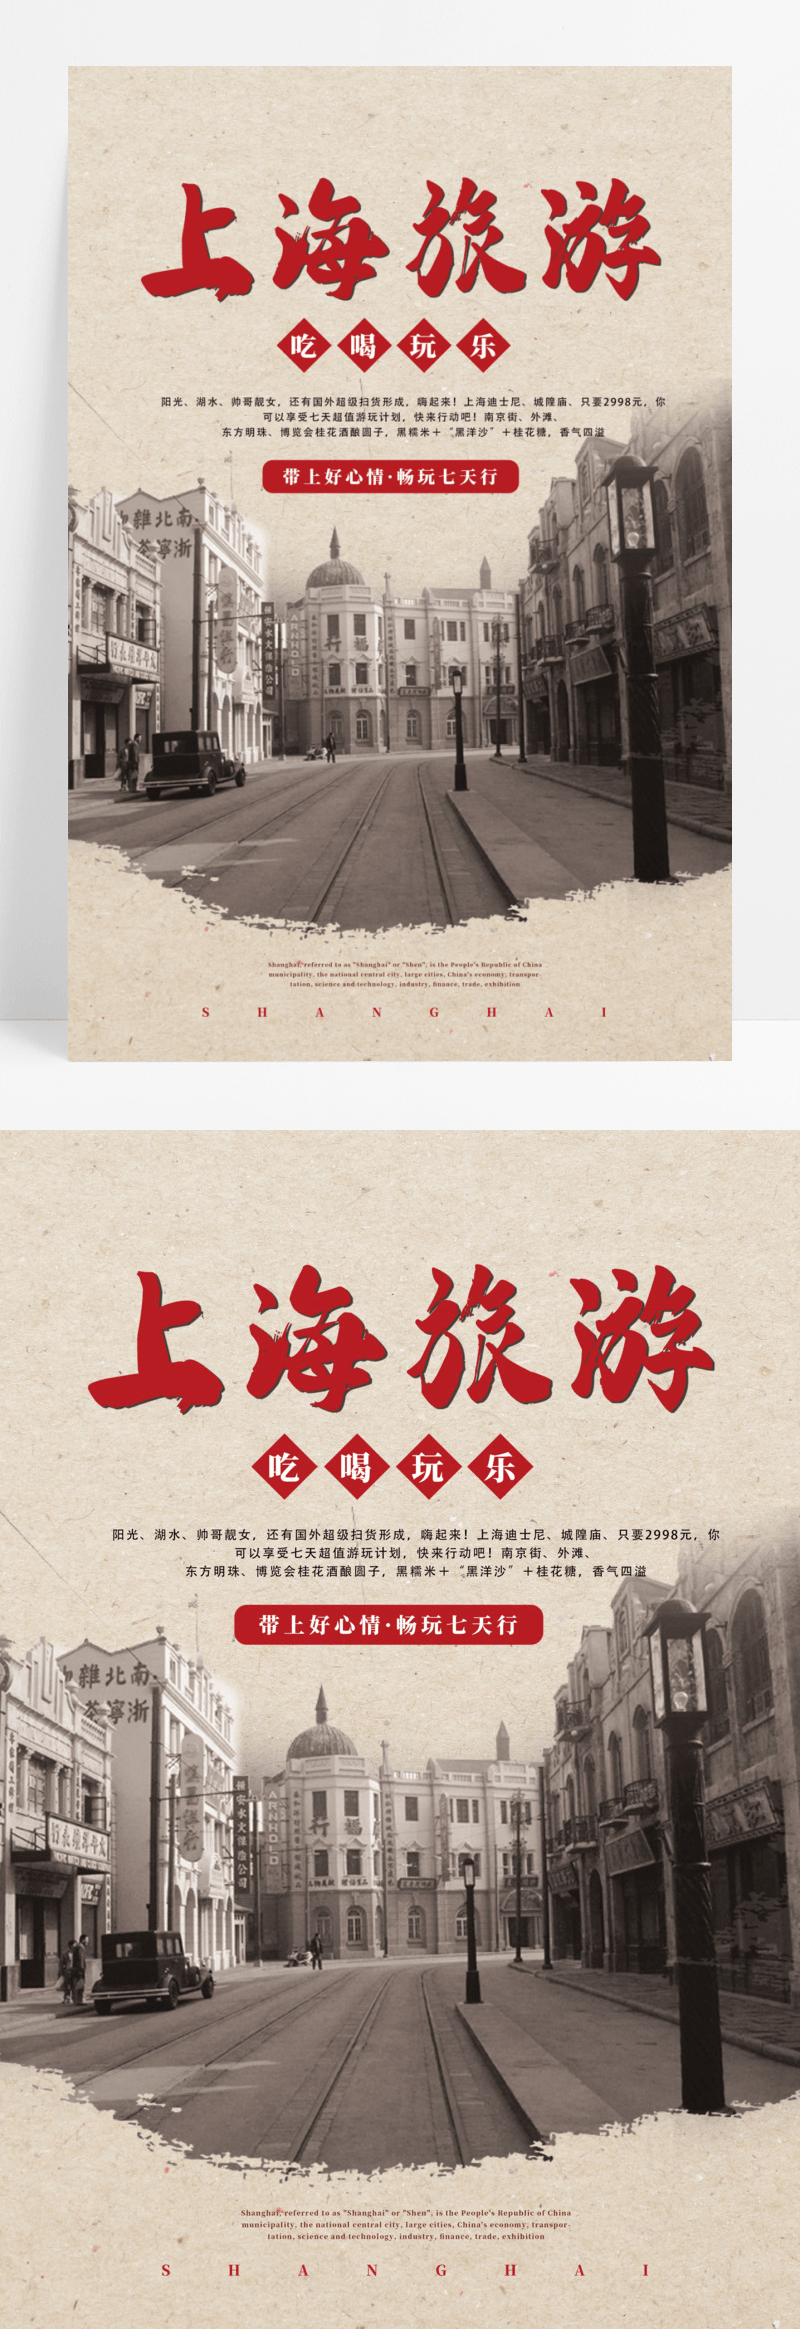 浅褐色复古怀旧风上海旅游宣传海报设计老上海复古民国风